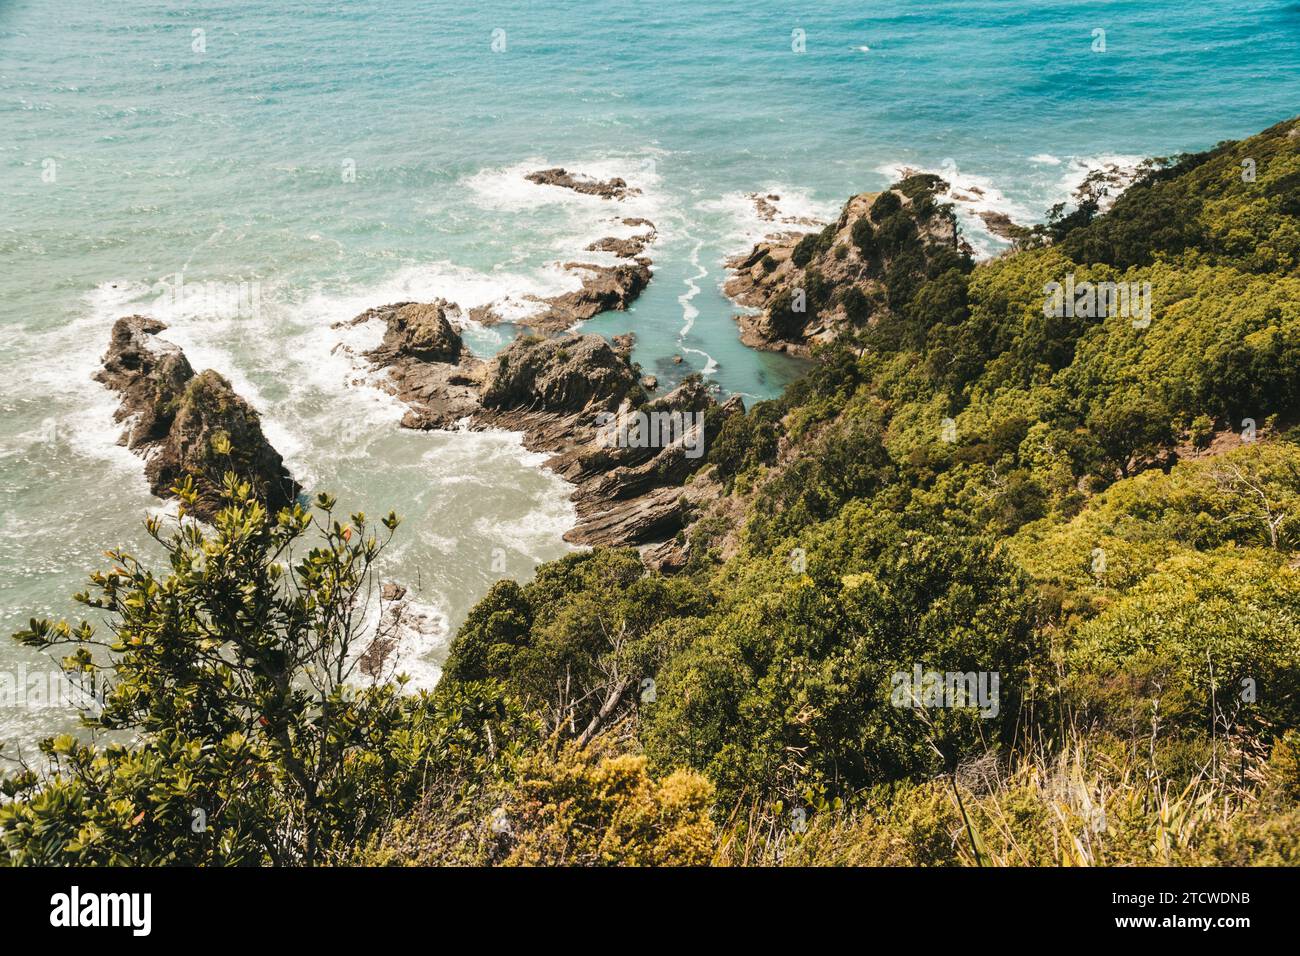 La spiaggia di Ohope in nuova Zelanda mostra spiagge, diverse formazioni rocciose, flora e fauna. Foto Stock